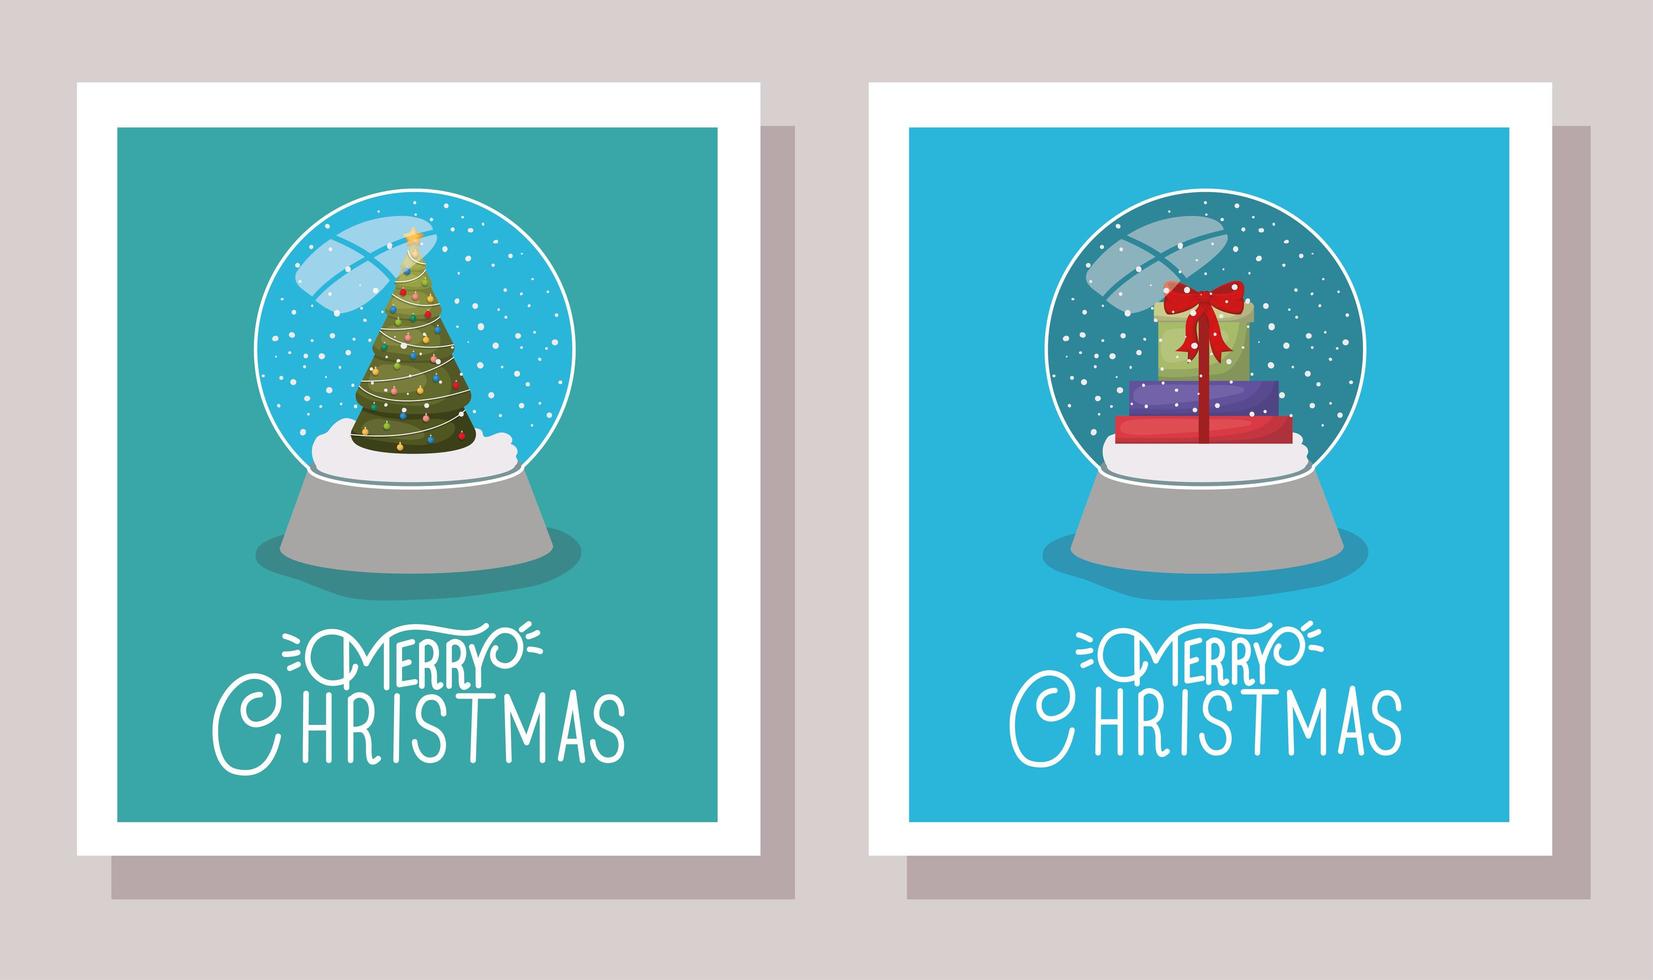 feliz navidad conjunto de tarjetas vector